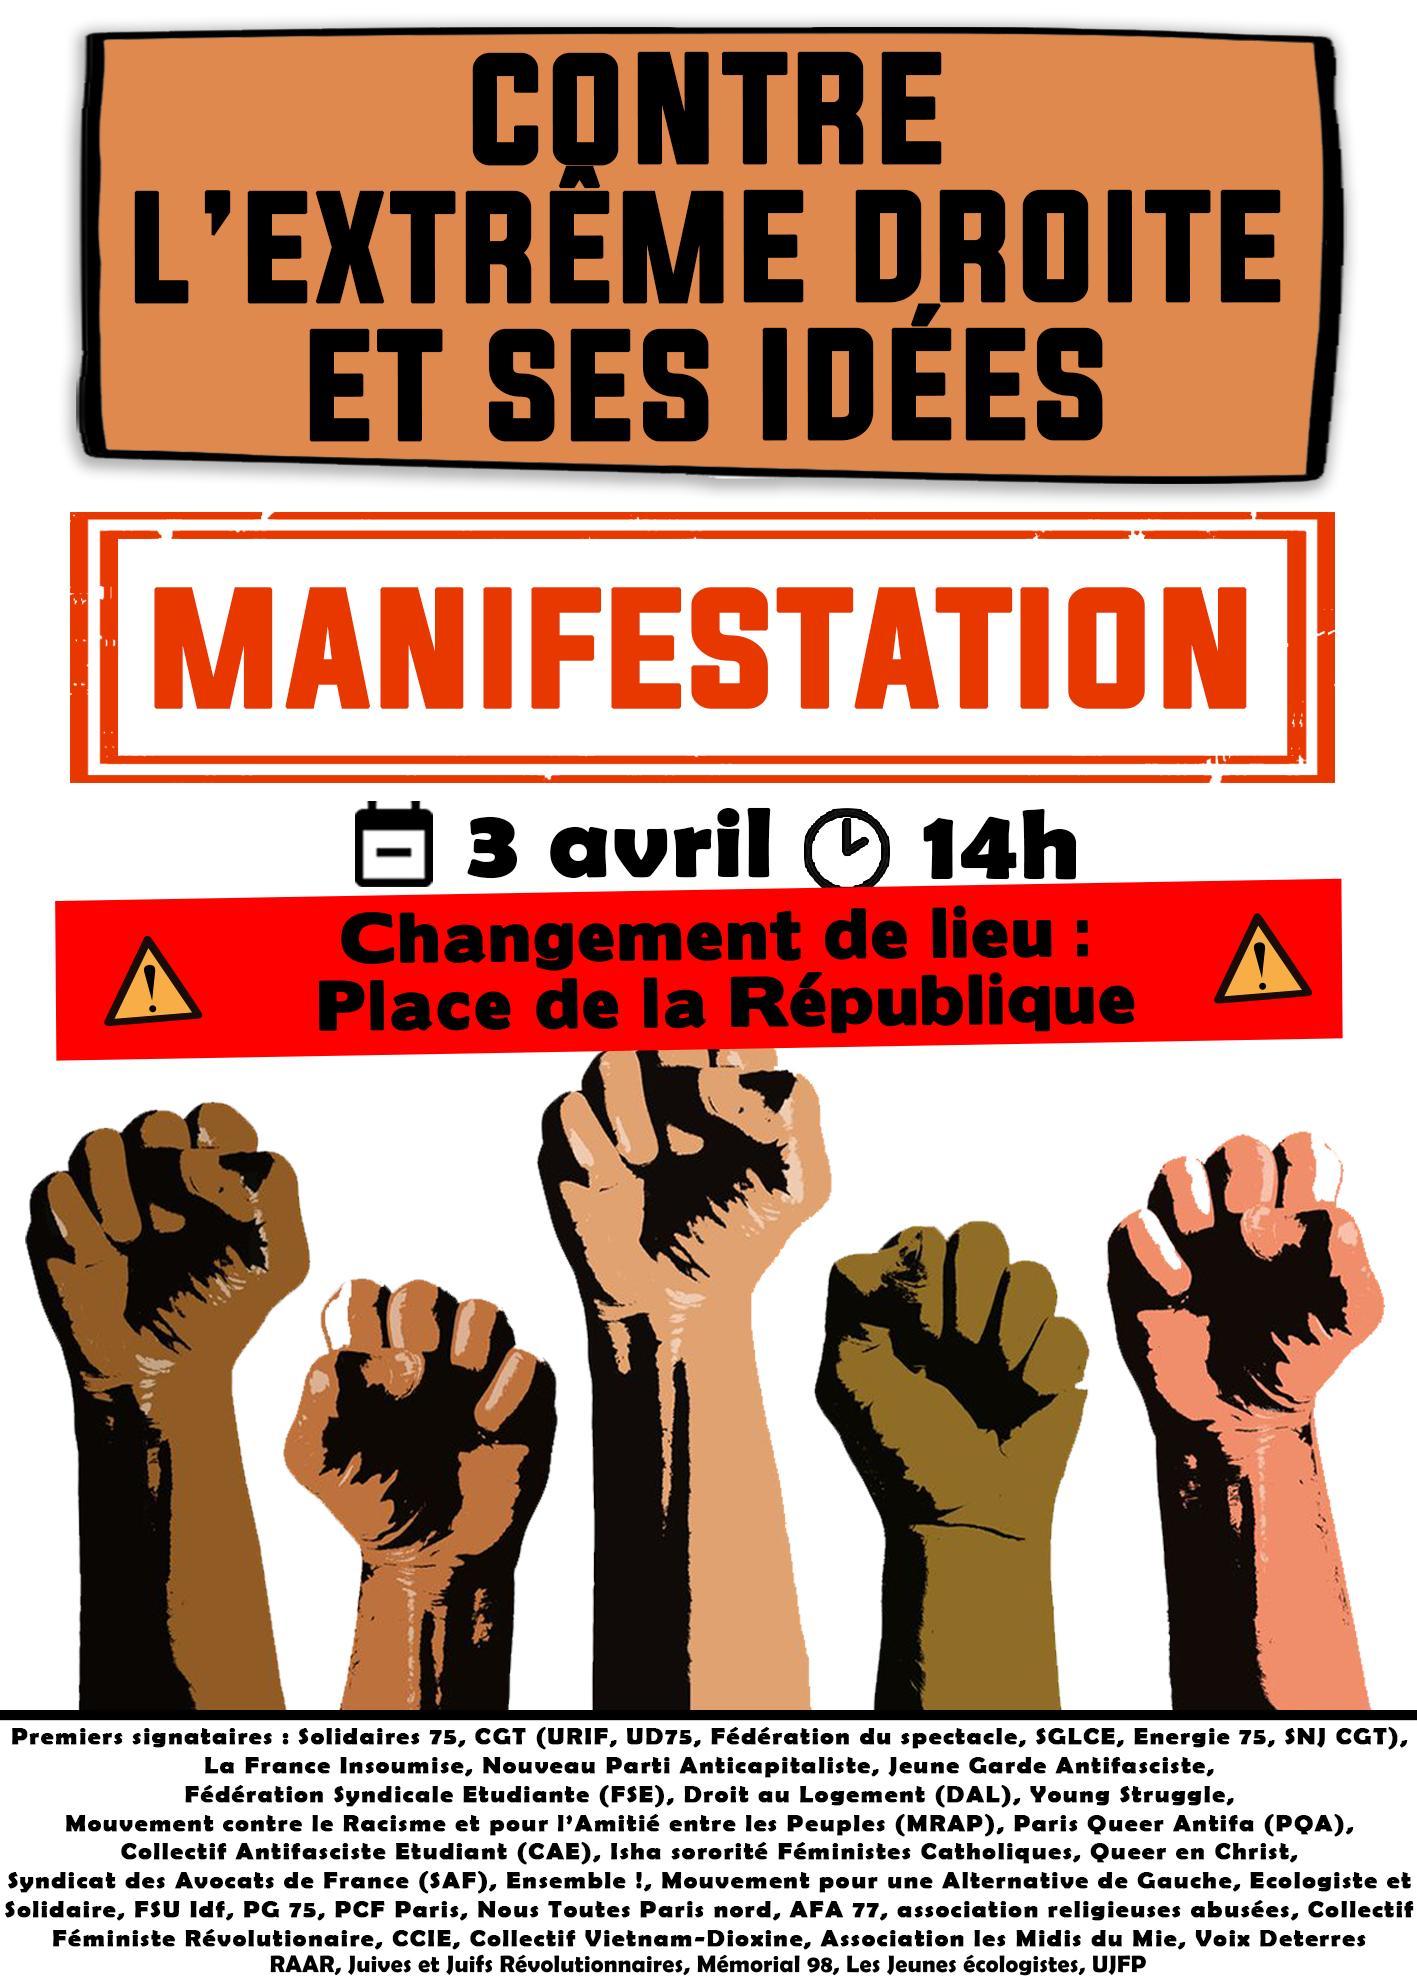 Place des Terreaux. Une manifestation en soutien au Groupe antifasciste  Lyon et environs (Gale) ce samedi